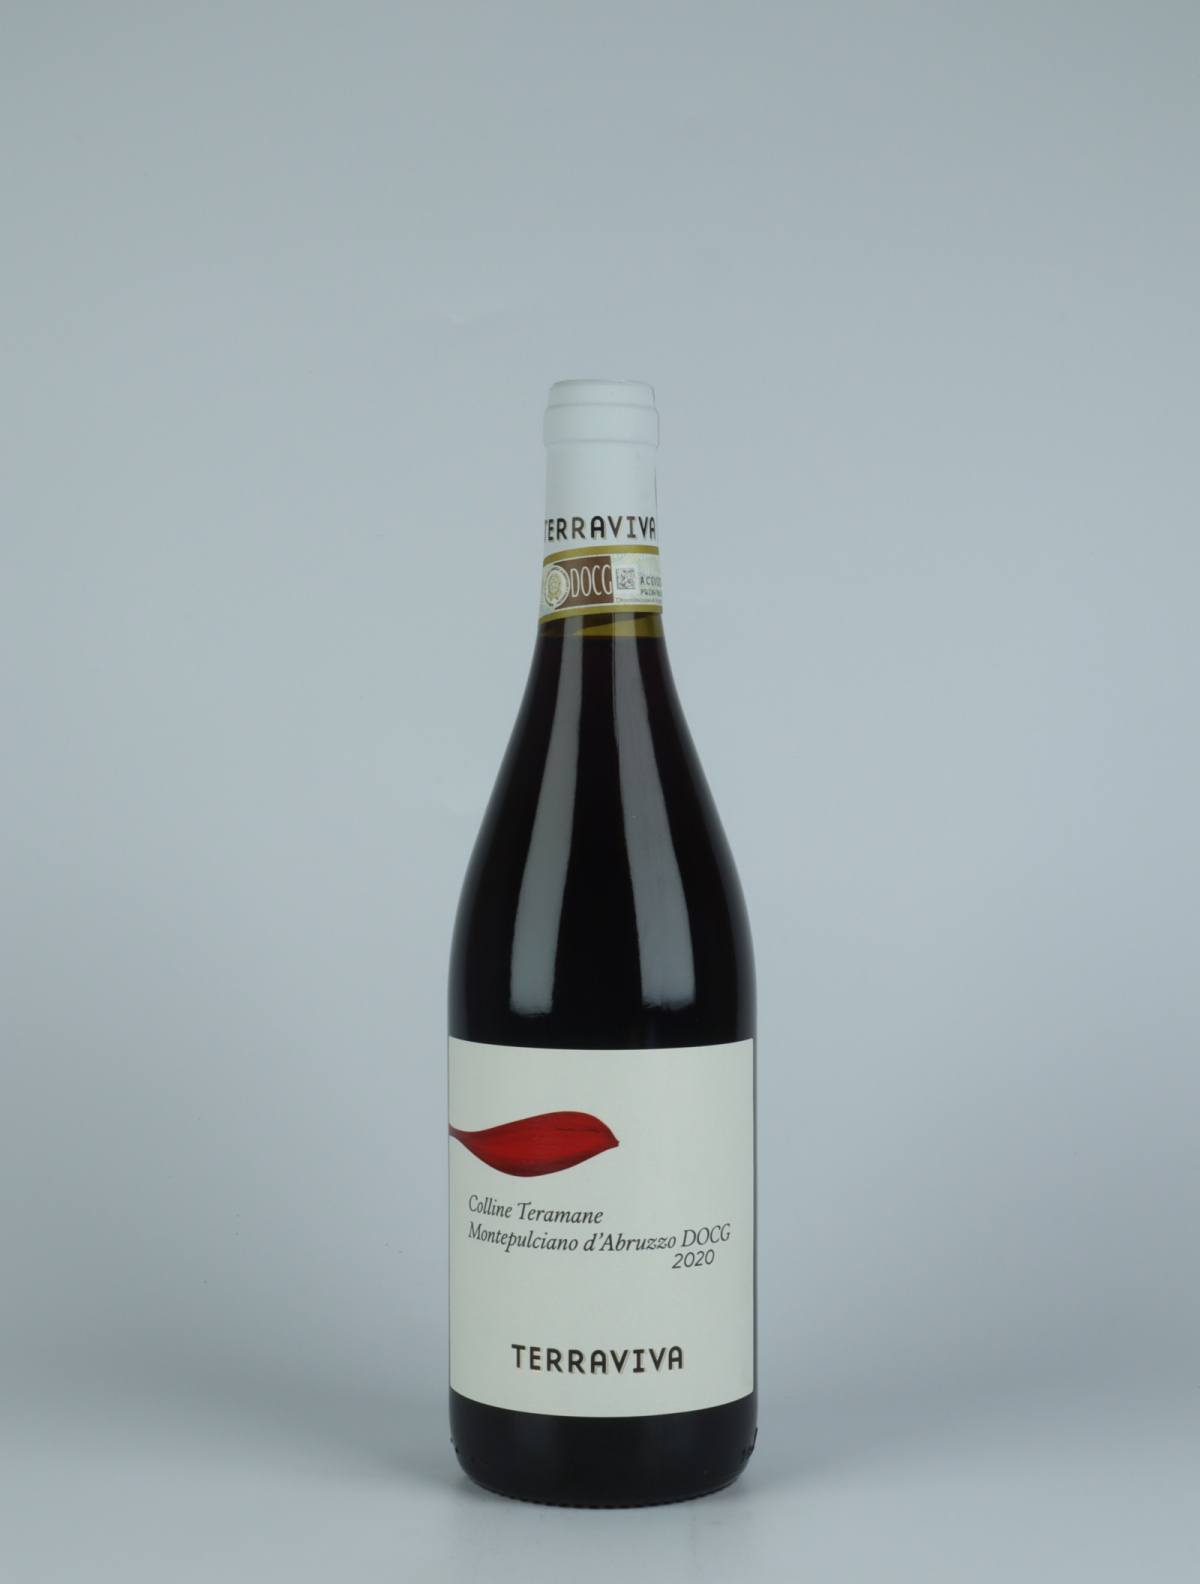 A bottle 2020 Montepulciano d'Abruzzo Red wine from Tenuta Terraviva, Abruzzo in Italy